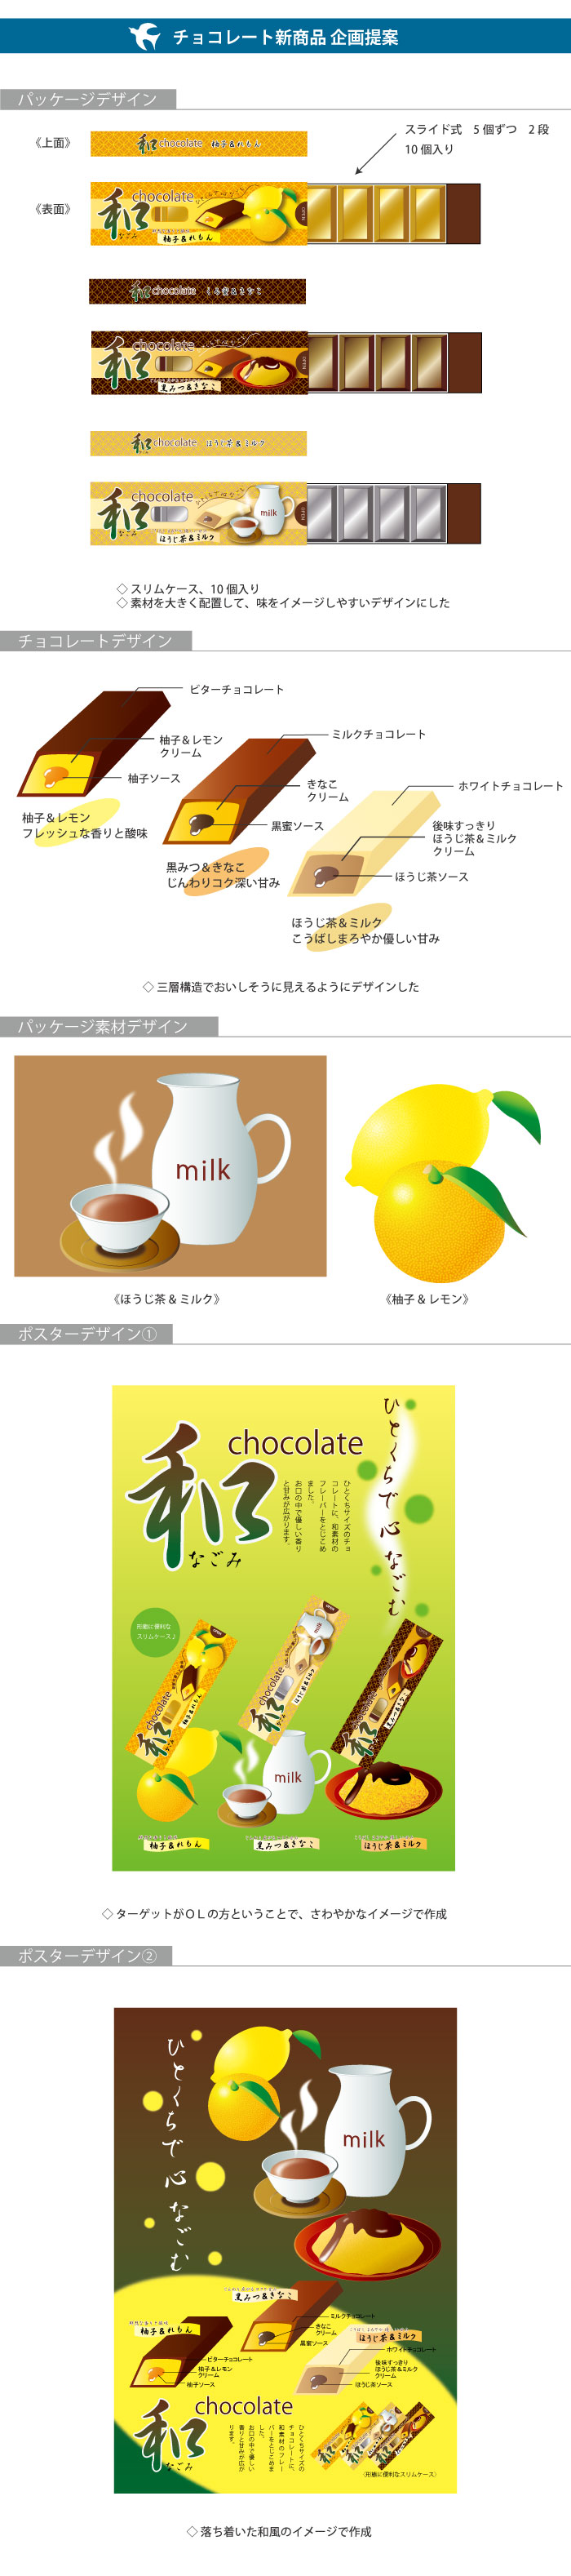 チョコレート菓子新商品企画提案 制作物画像